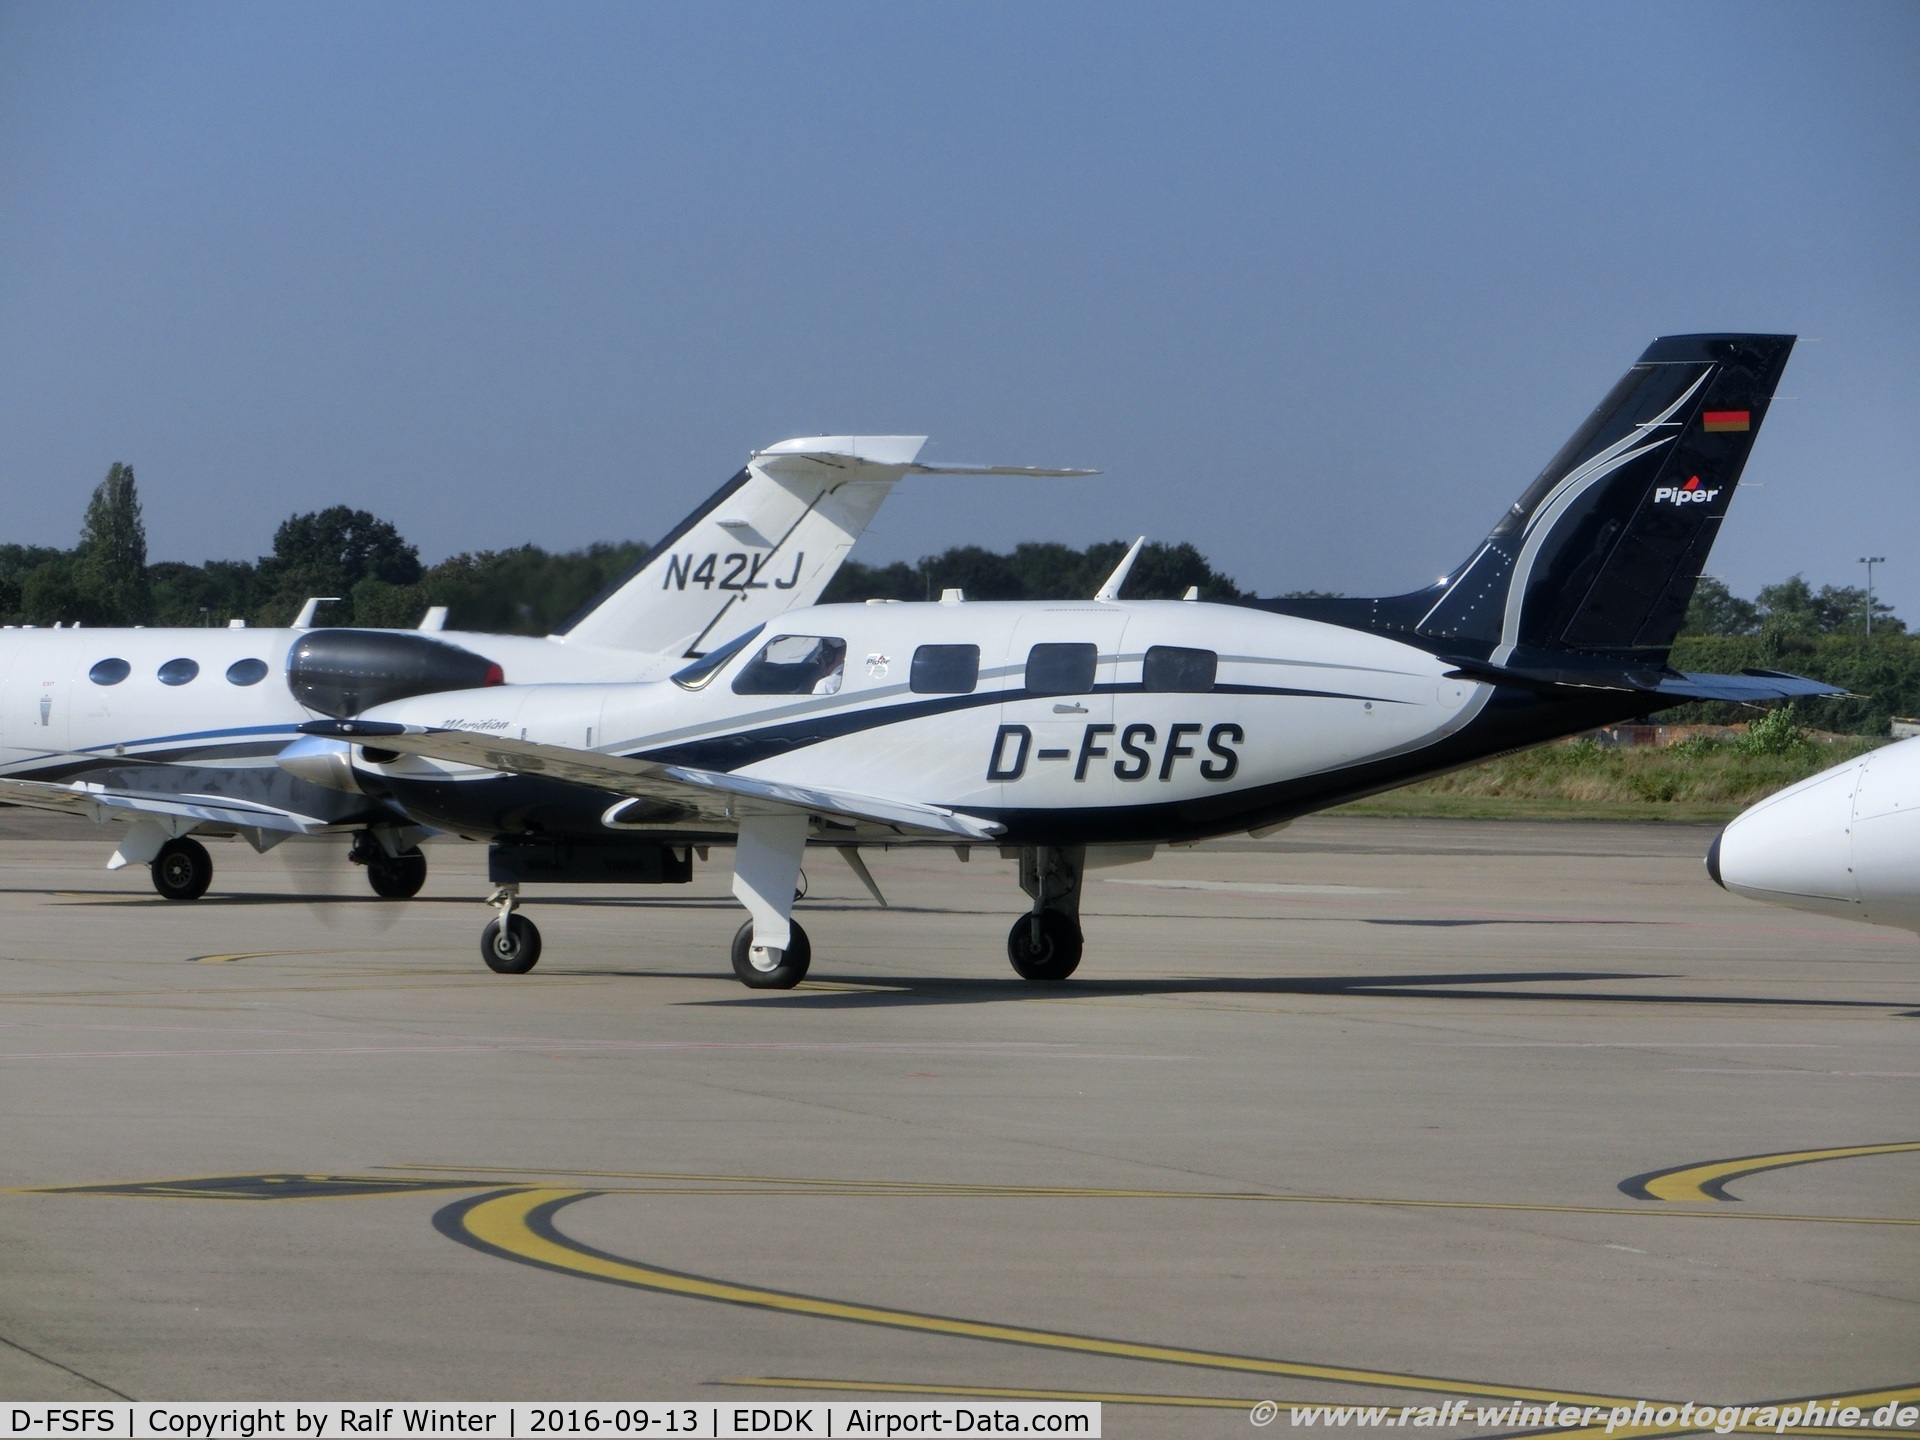 D-FSFS, Piper PA-46-500TP Malibu Meridian C/N 4697492, Piper Aircraft PA-46-500TP Malibu Meridian - Private - 4697492 - D-FSFS - 13.09.2016 - CGN